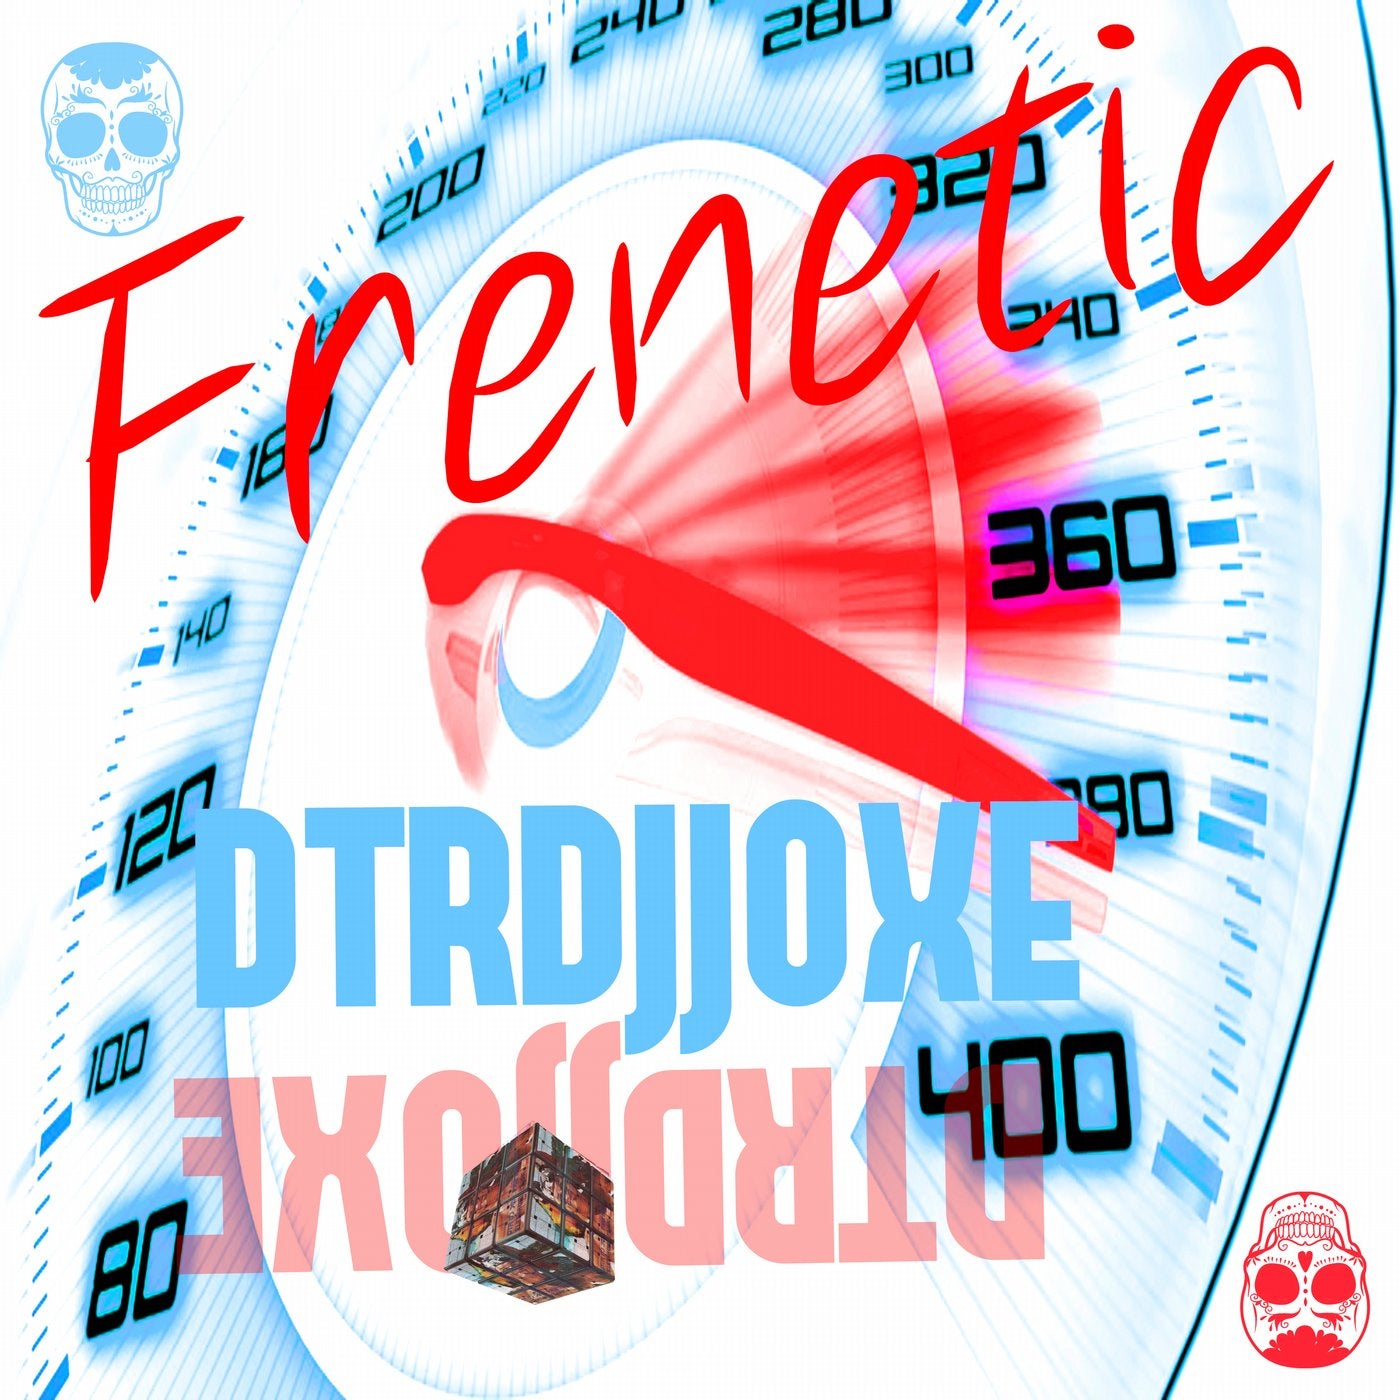 Frenetic